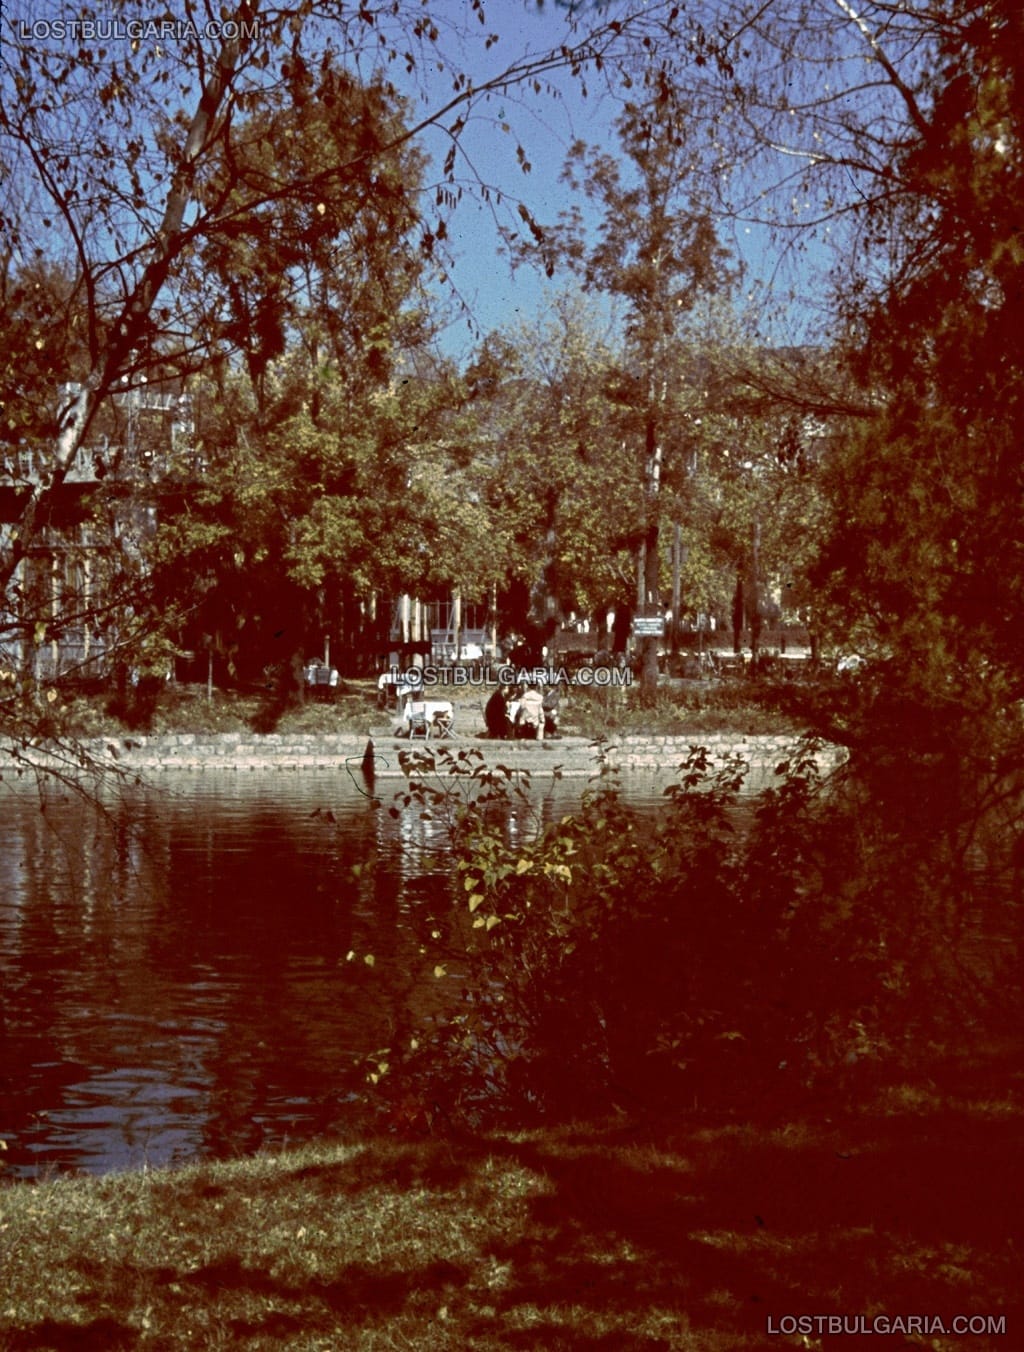 София, Борисовата градина, езерото "Ариана" и кръчмата на островчето, цветен диапозитив AGFA, около 1943 г.